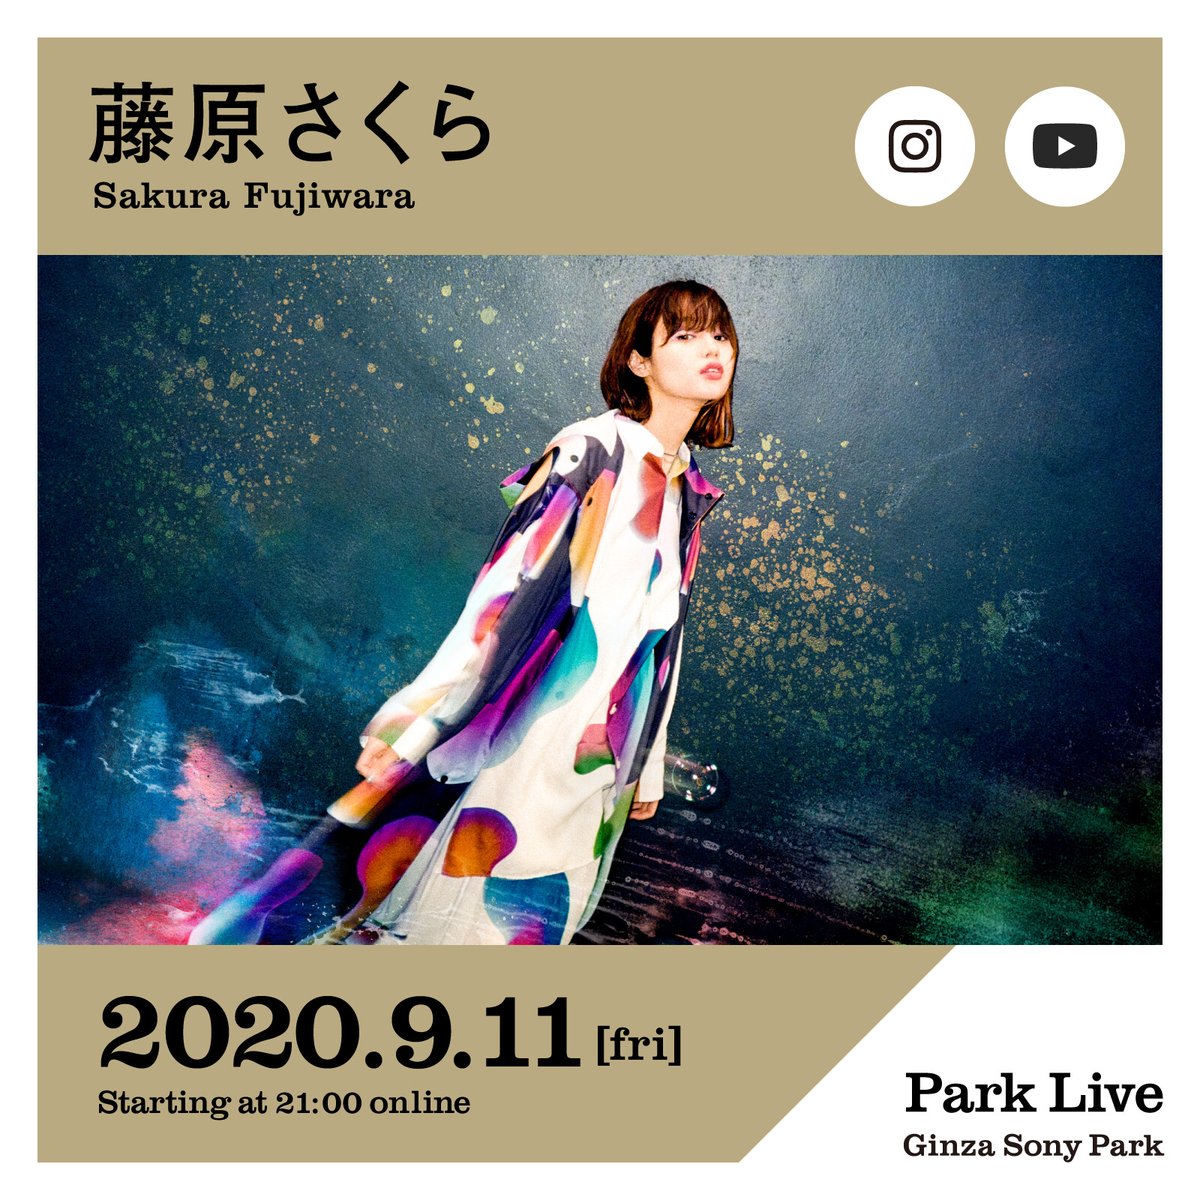 藤原さくら： Ginza Sony Parkが開催するPark Live。 YouTubeとインスタライブで生配信